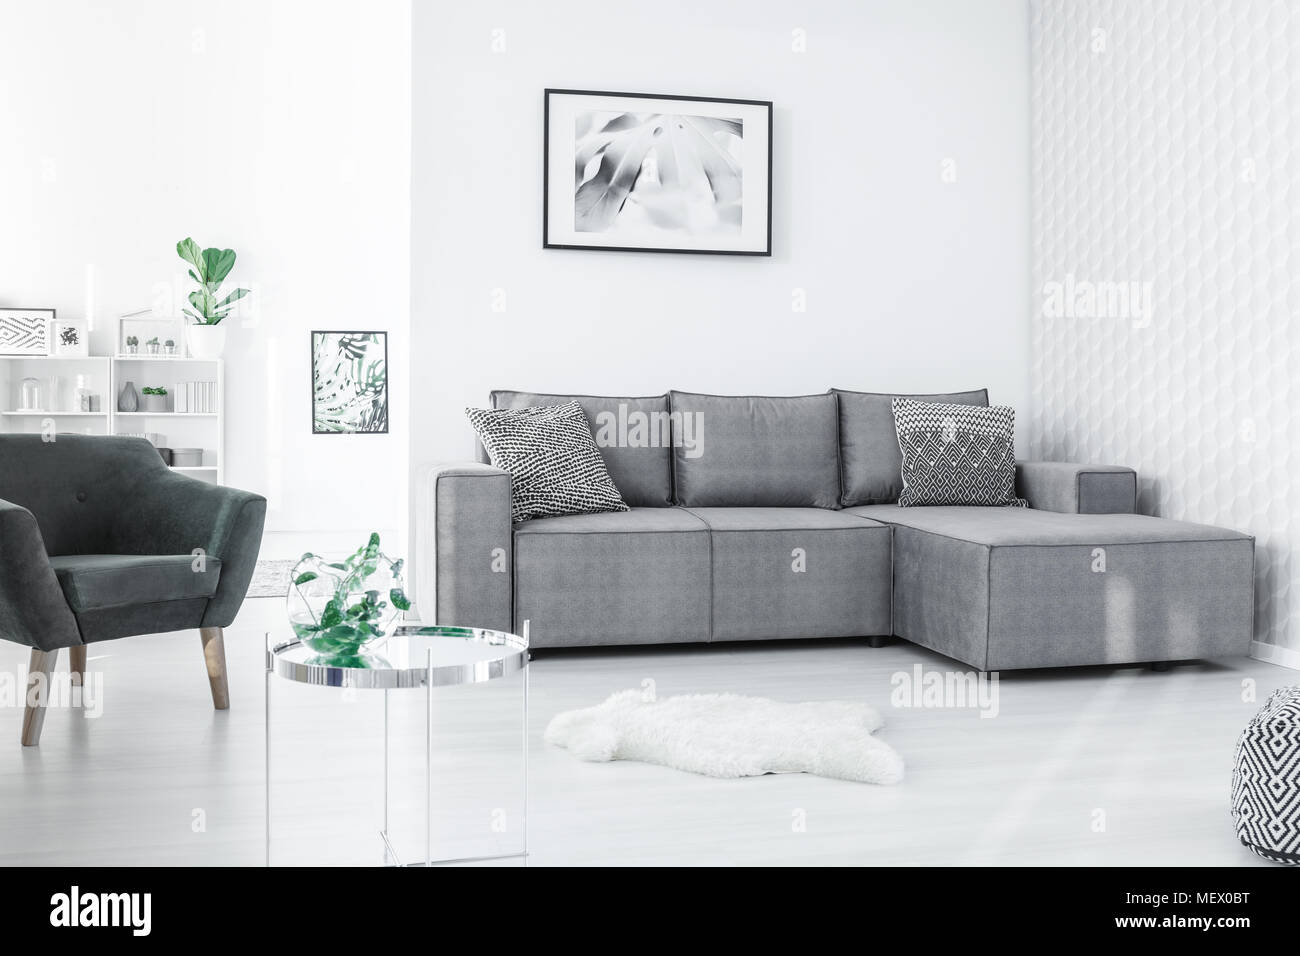 Affiche en noir et blanc accrochée au mur dans un espace libre télévision intérieur en style nordique avec des plantes fraîches Banque D'Images